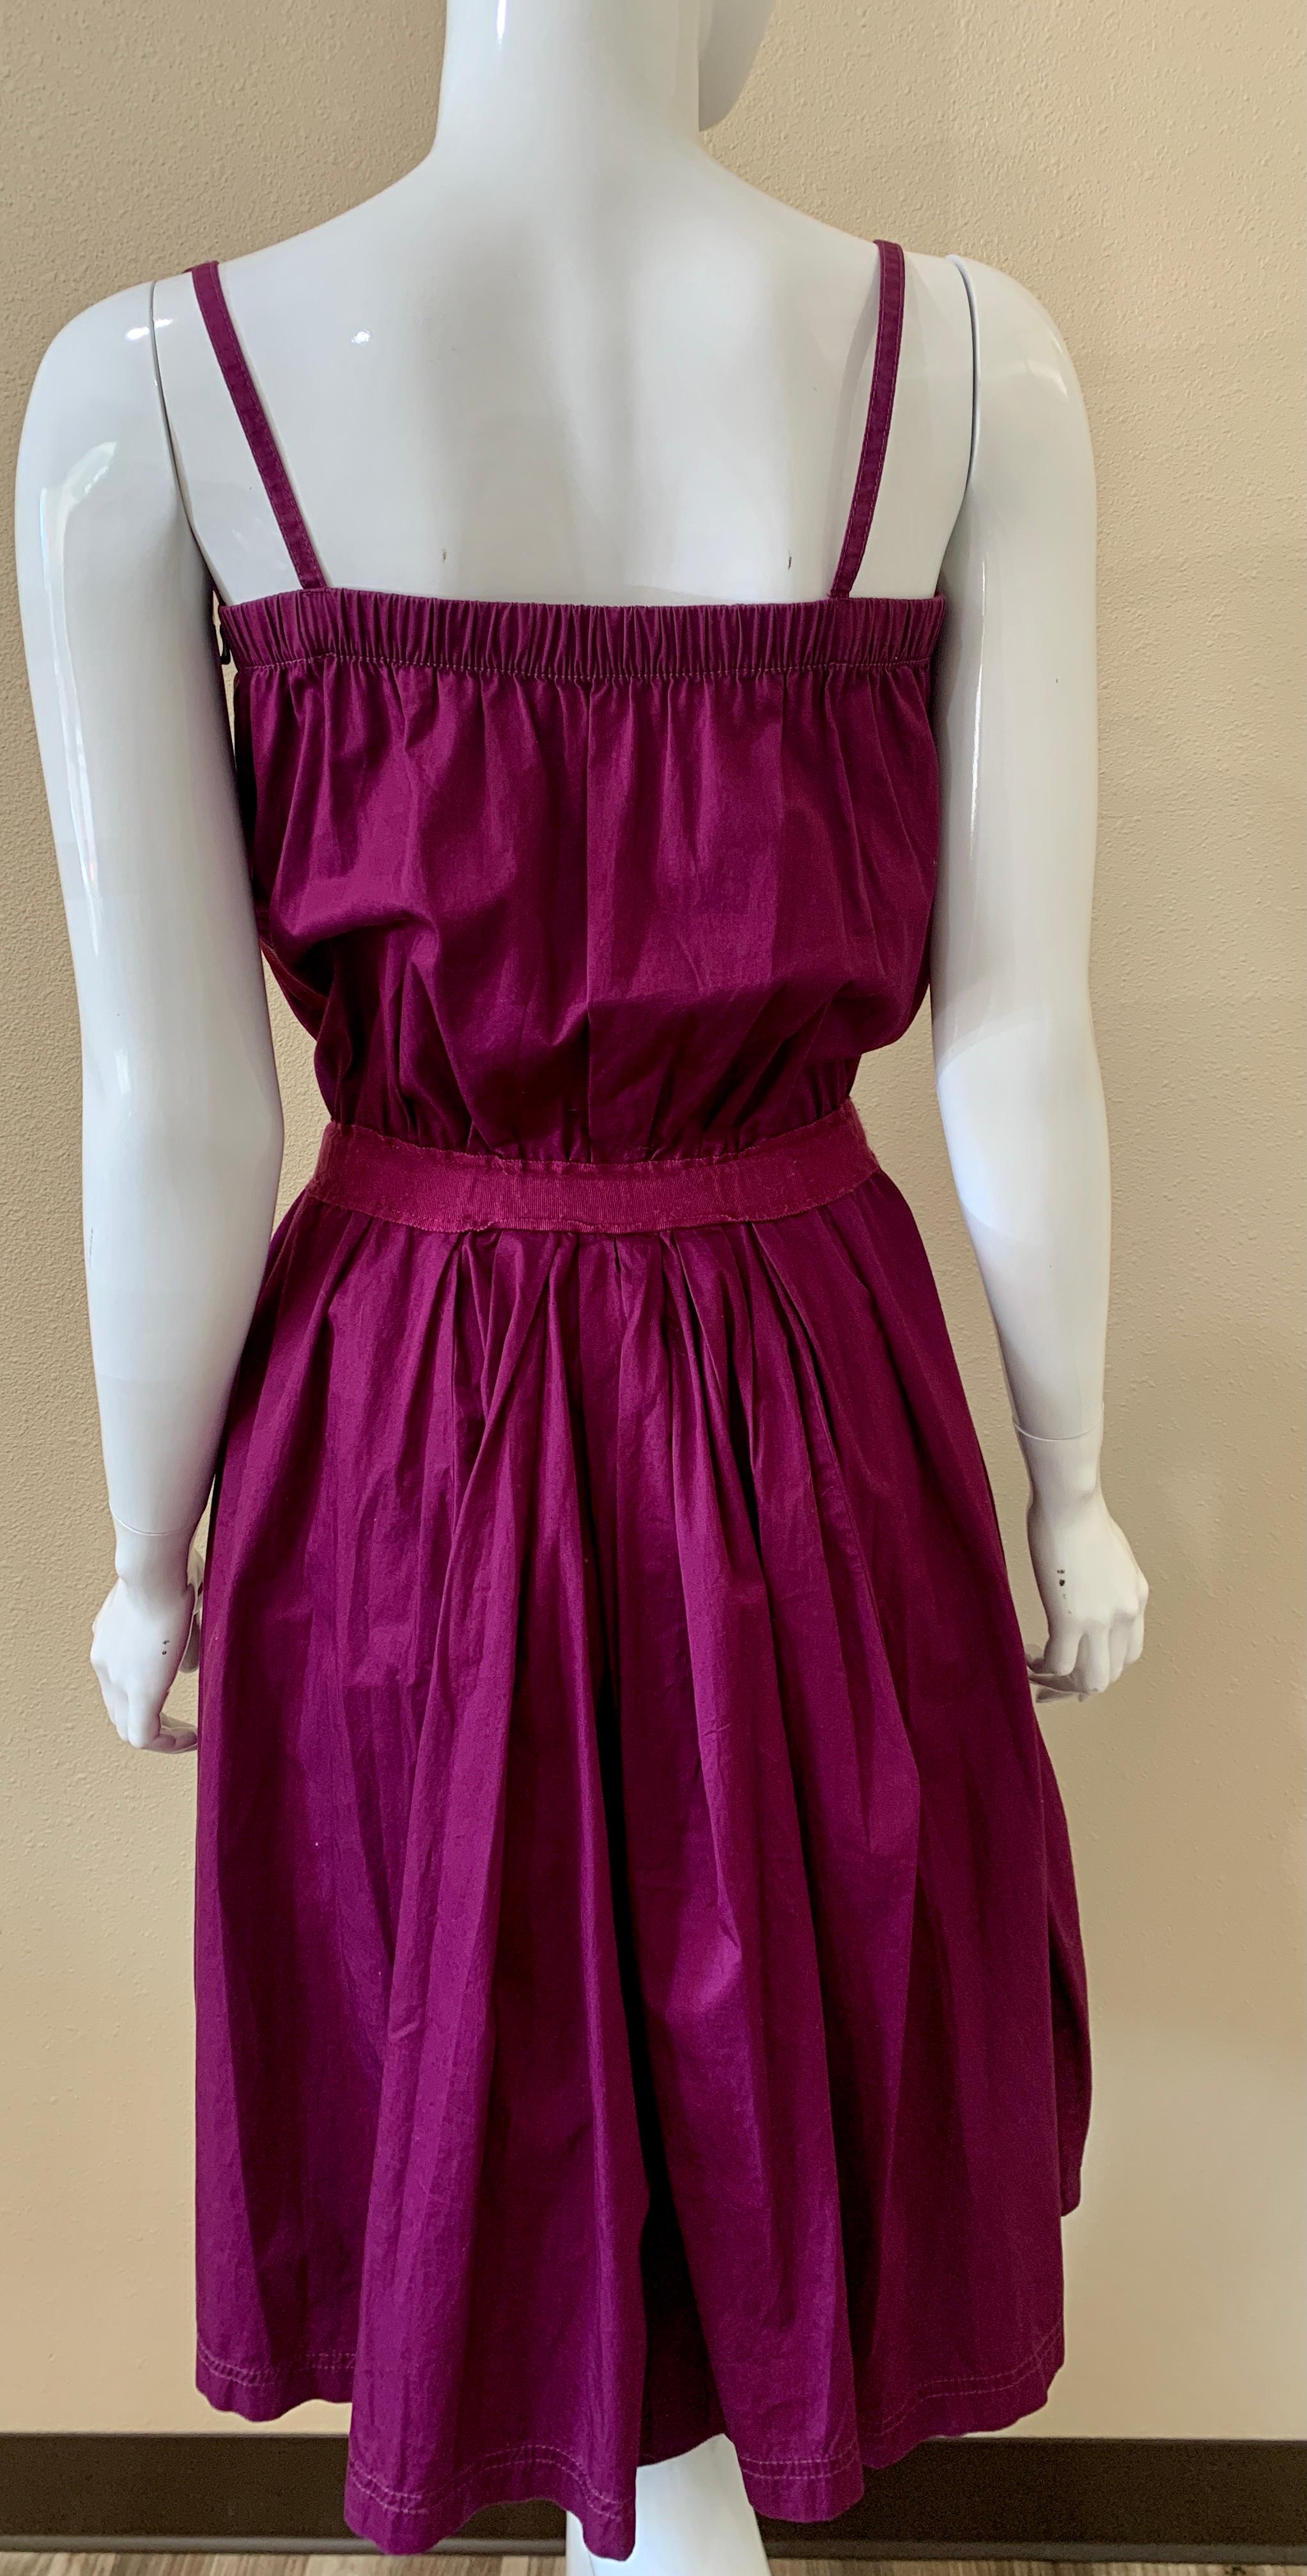 Robe de jour Lanvin en coton violet qui a un embellissement de fleurs avec une ceinture. Elle arrive au genou, sensation vintage. Parfait pour les journées de printemps/été. Les fronces à la taille et à la poitrine mettent la silhouette en valeur.